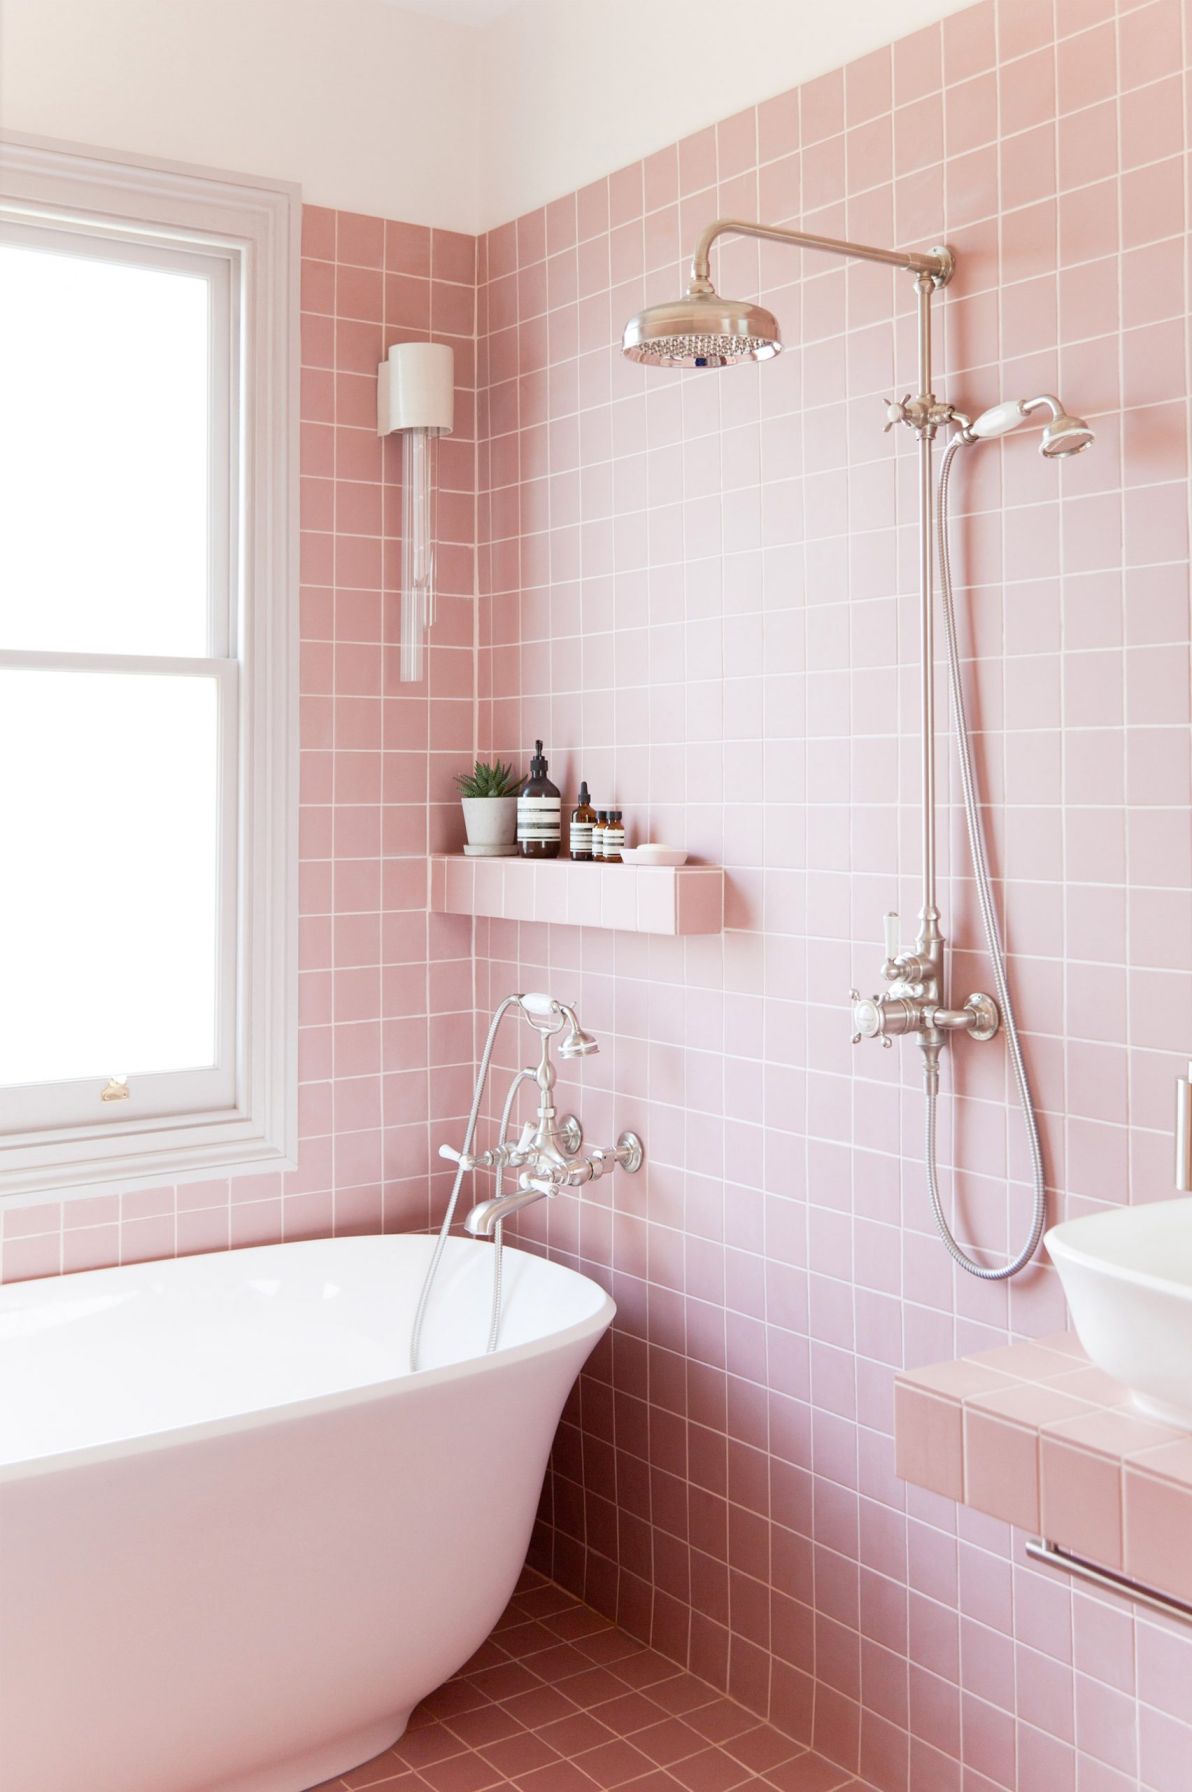 Warna Baby Pink Untuk Desain Rumah yang Cantik